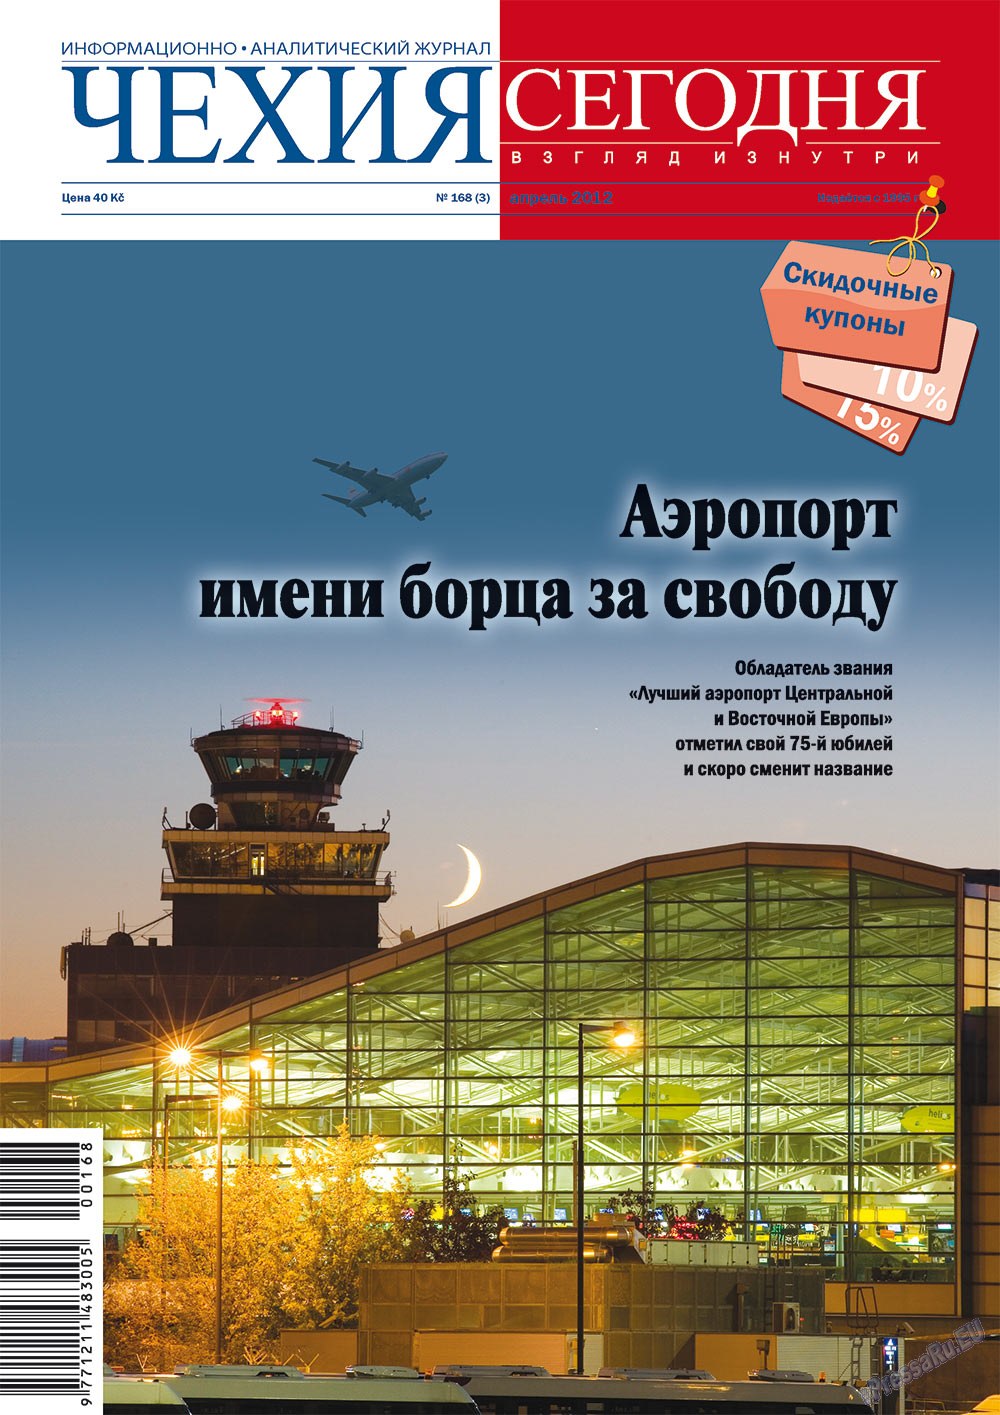 Chehia segodnja (Zeitschrift). 2012 Jahr, Ausgabe 168, Seite 1